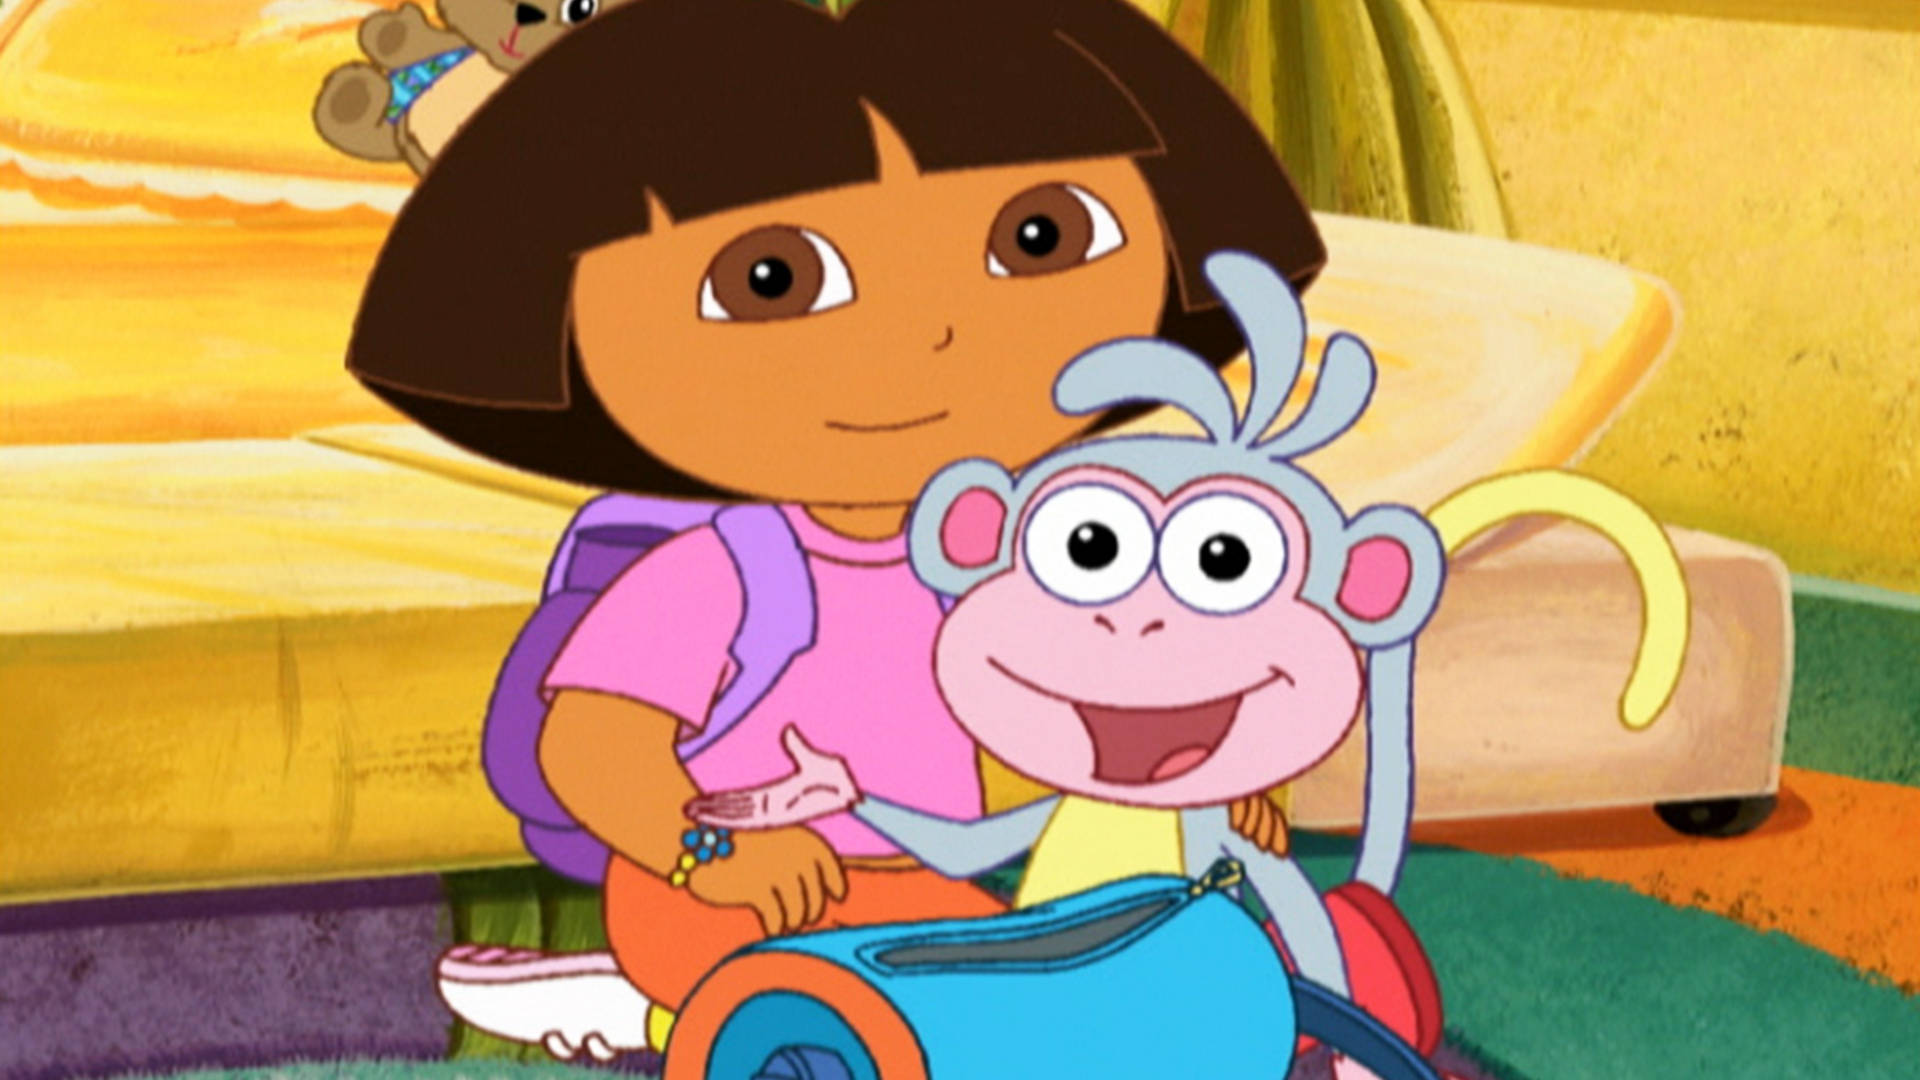 Watch Dora the Explorer Season 3 Episode 18 Boot's Cuddly Dinosaur